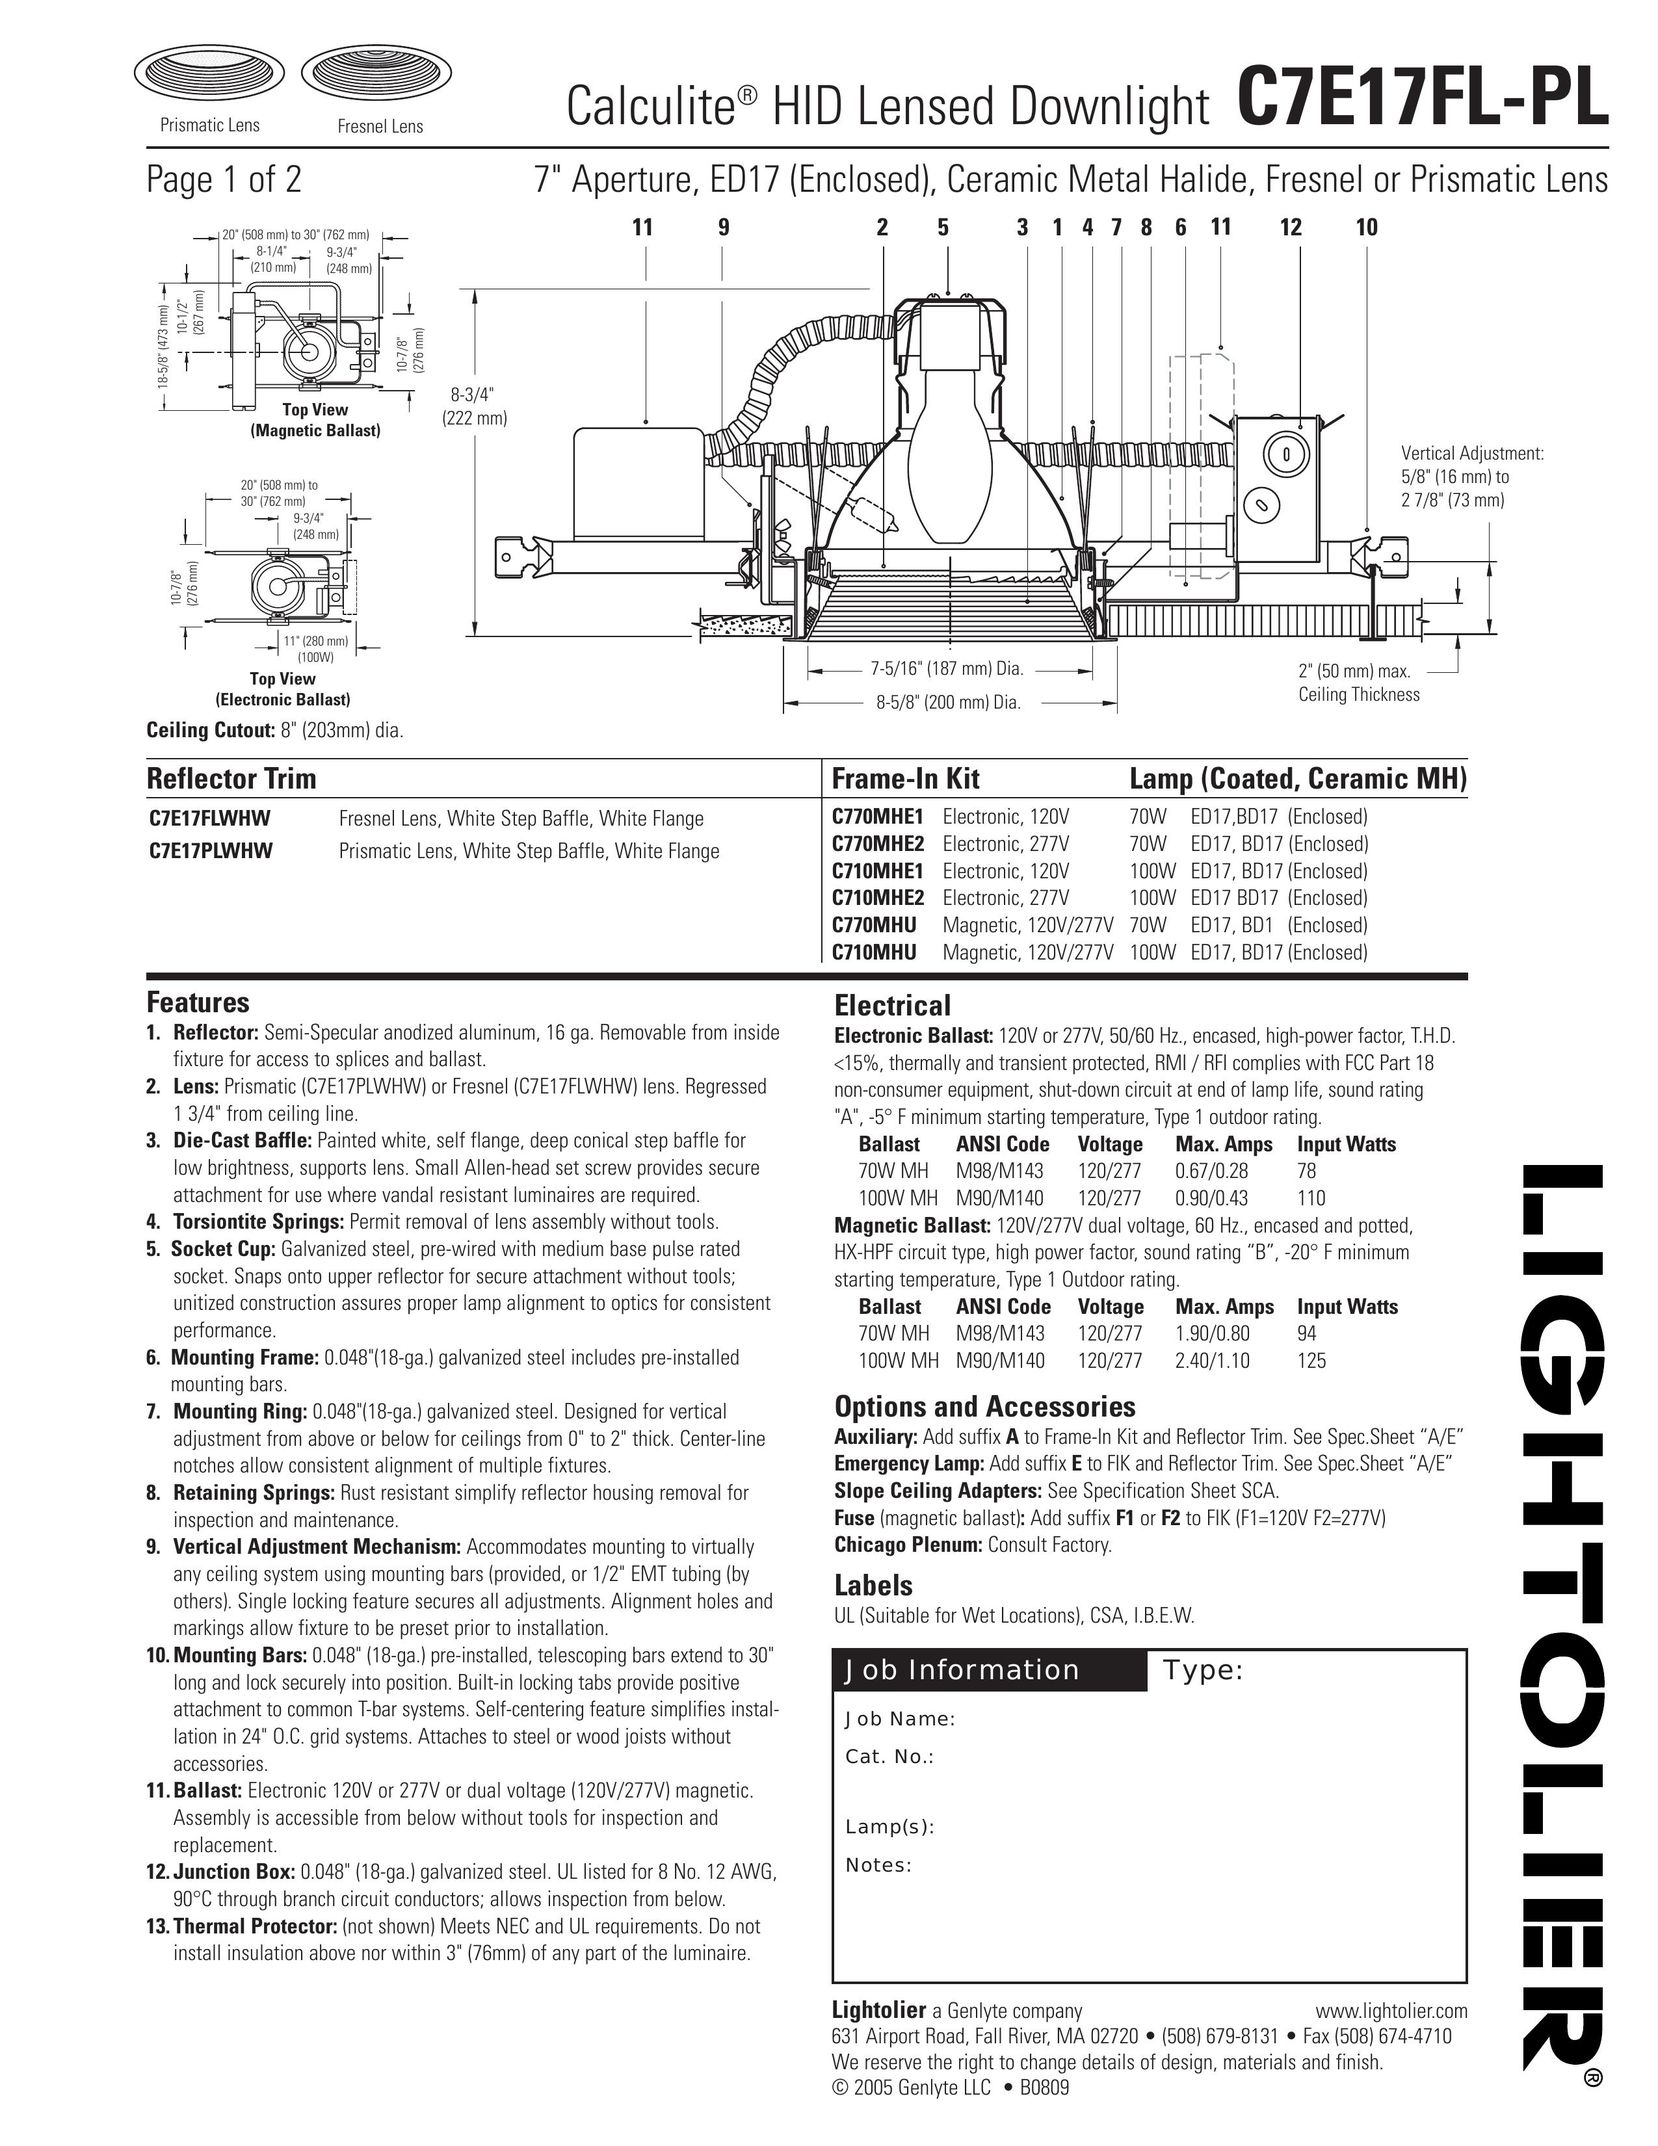 Lightolier C7E17FL-PL Work Light User Manual